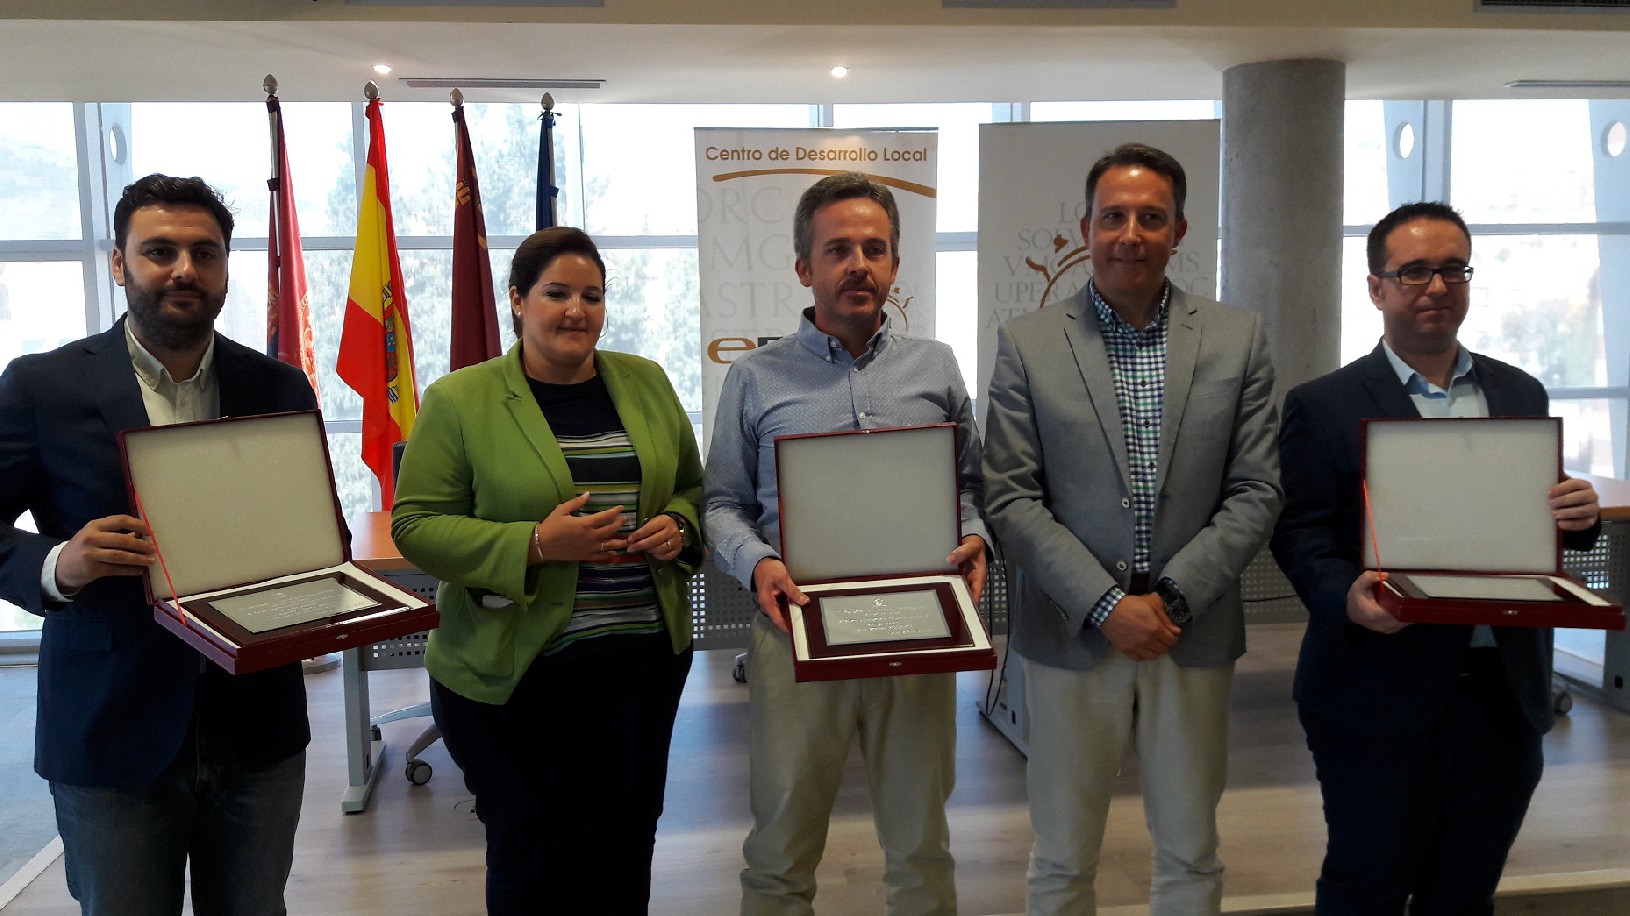 Tres innovadores proyectos de emprendedores lorquinos reciben de manos del Alcalde el premio del XI Certamen de Iniciativas Empresariales "Ciudad de Lorca"